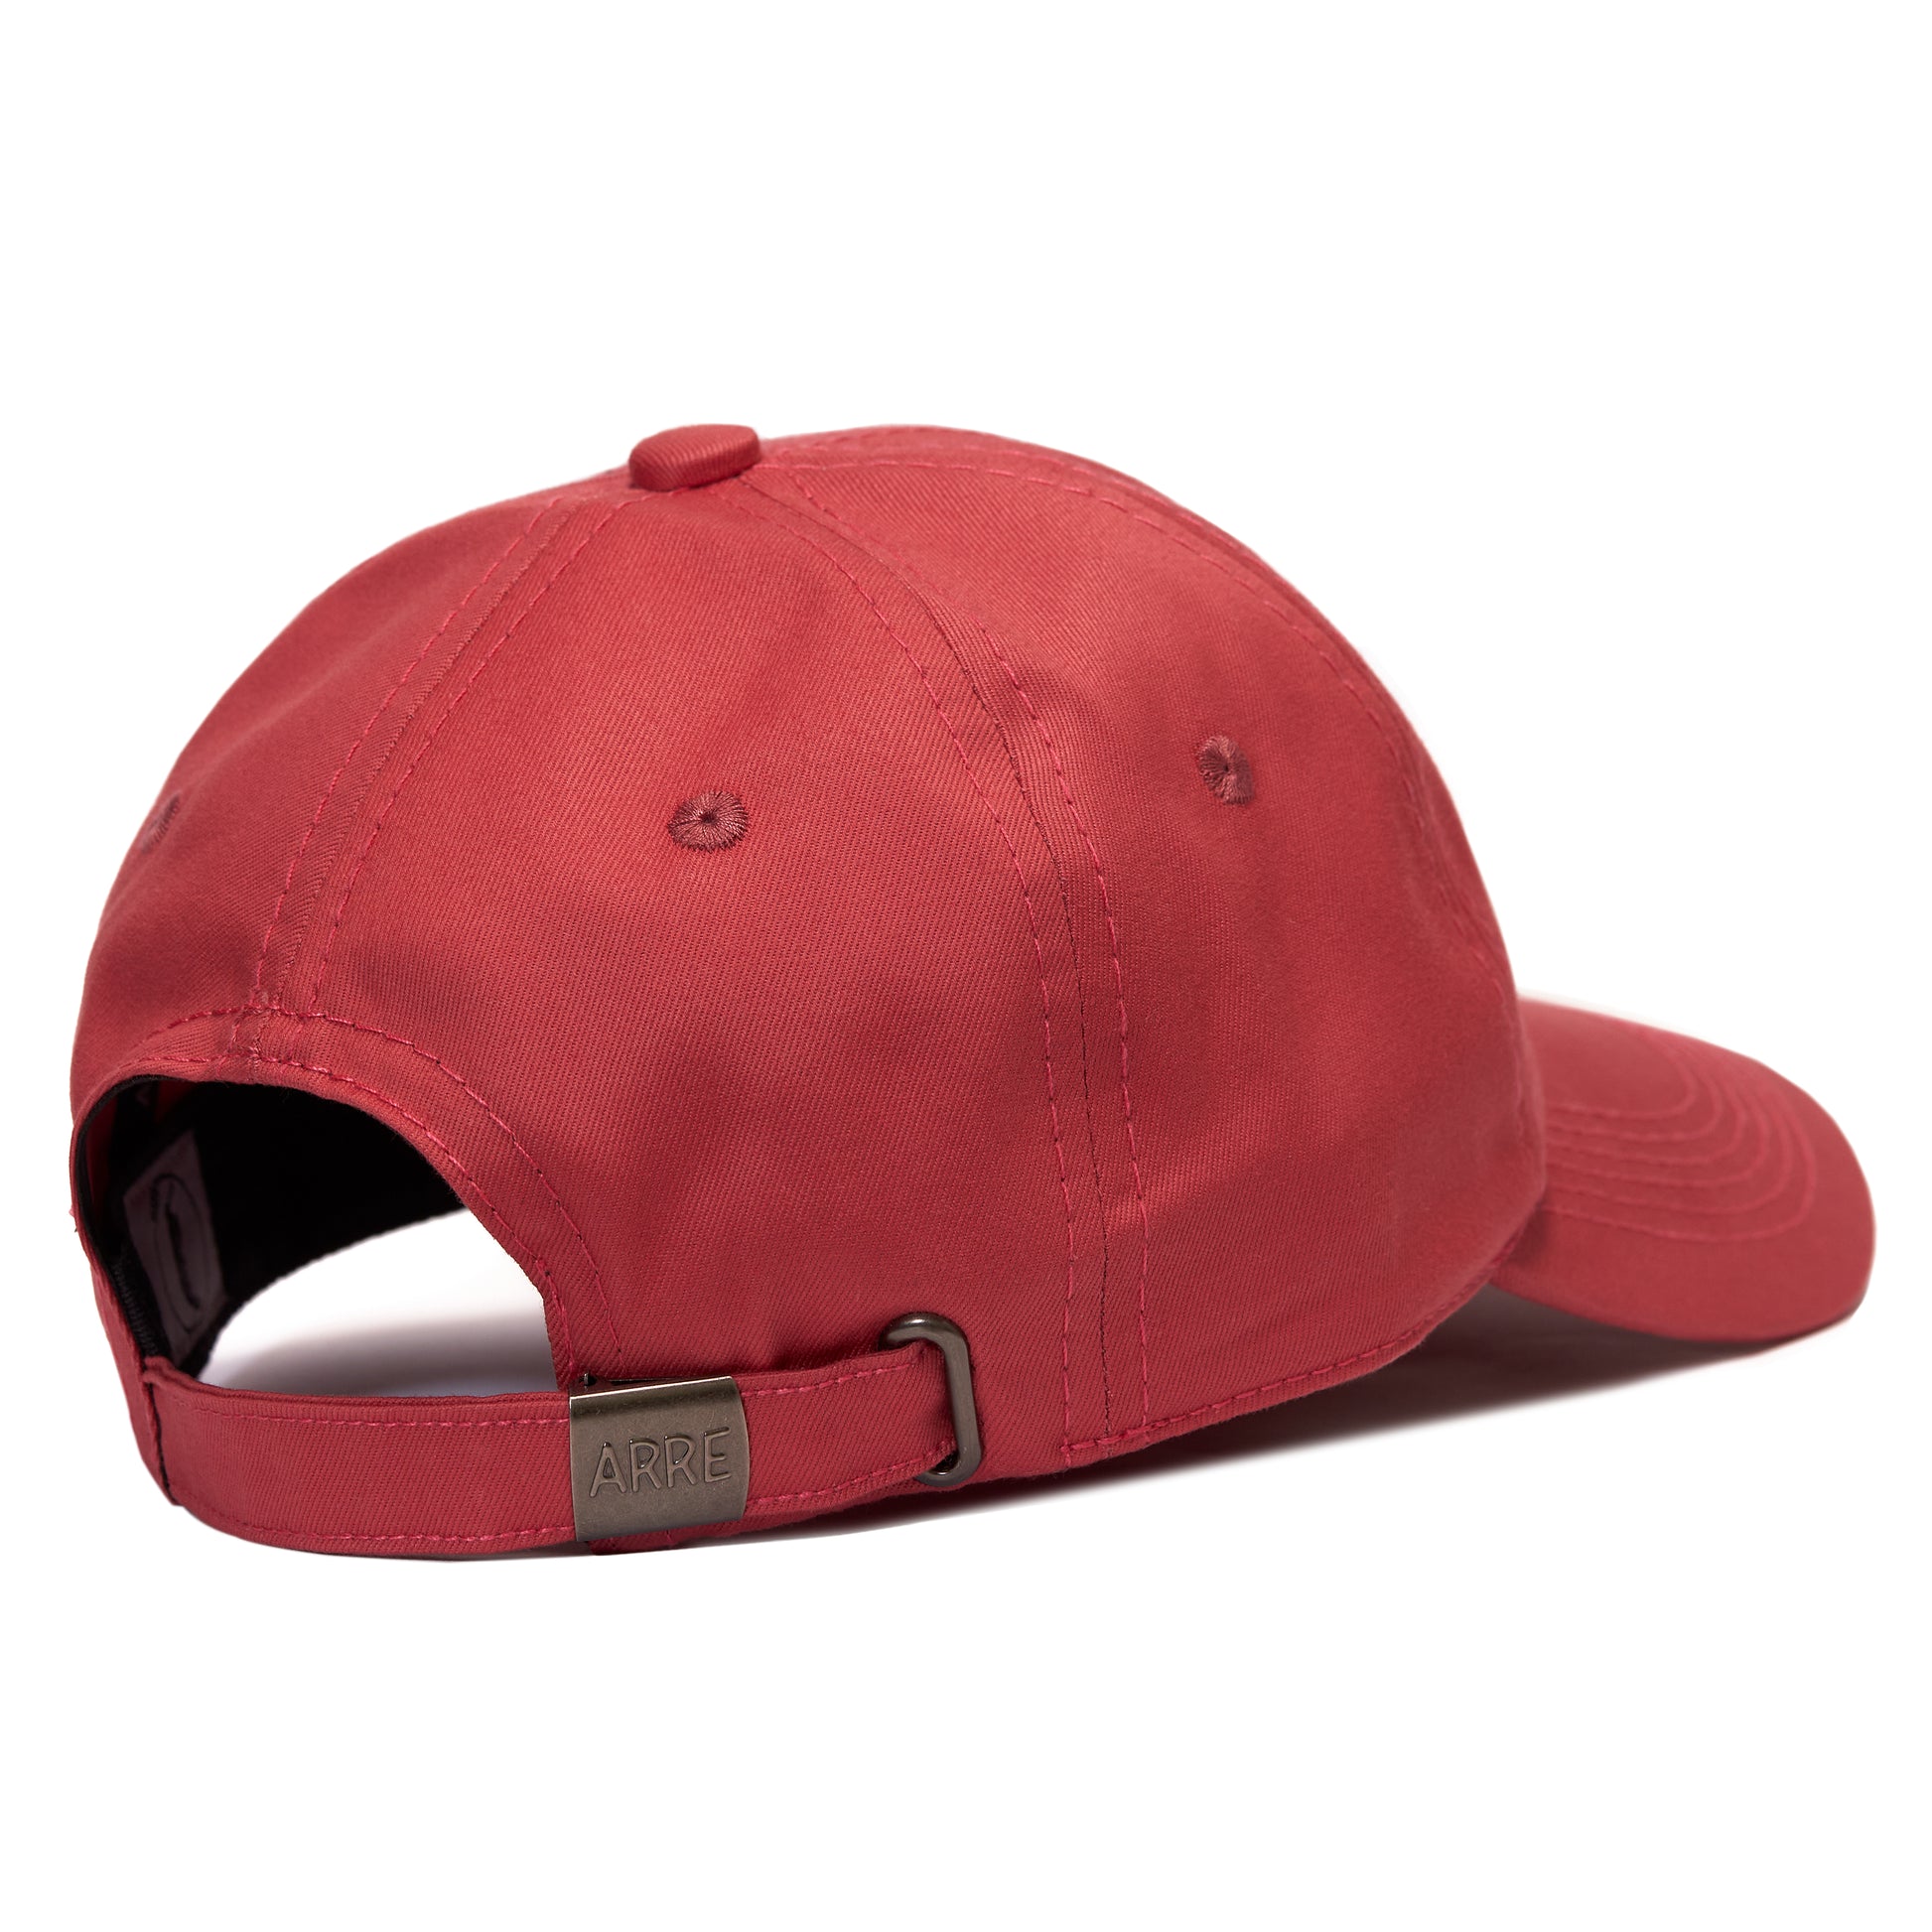 Hats - – Red Coral Arre Arre Cap